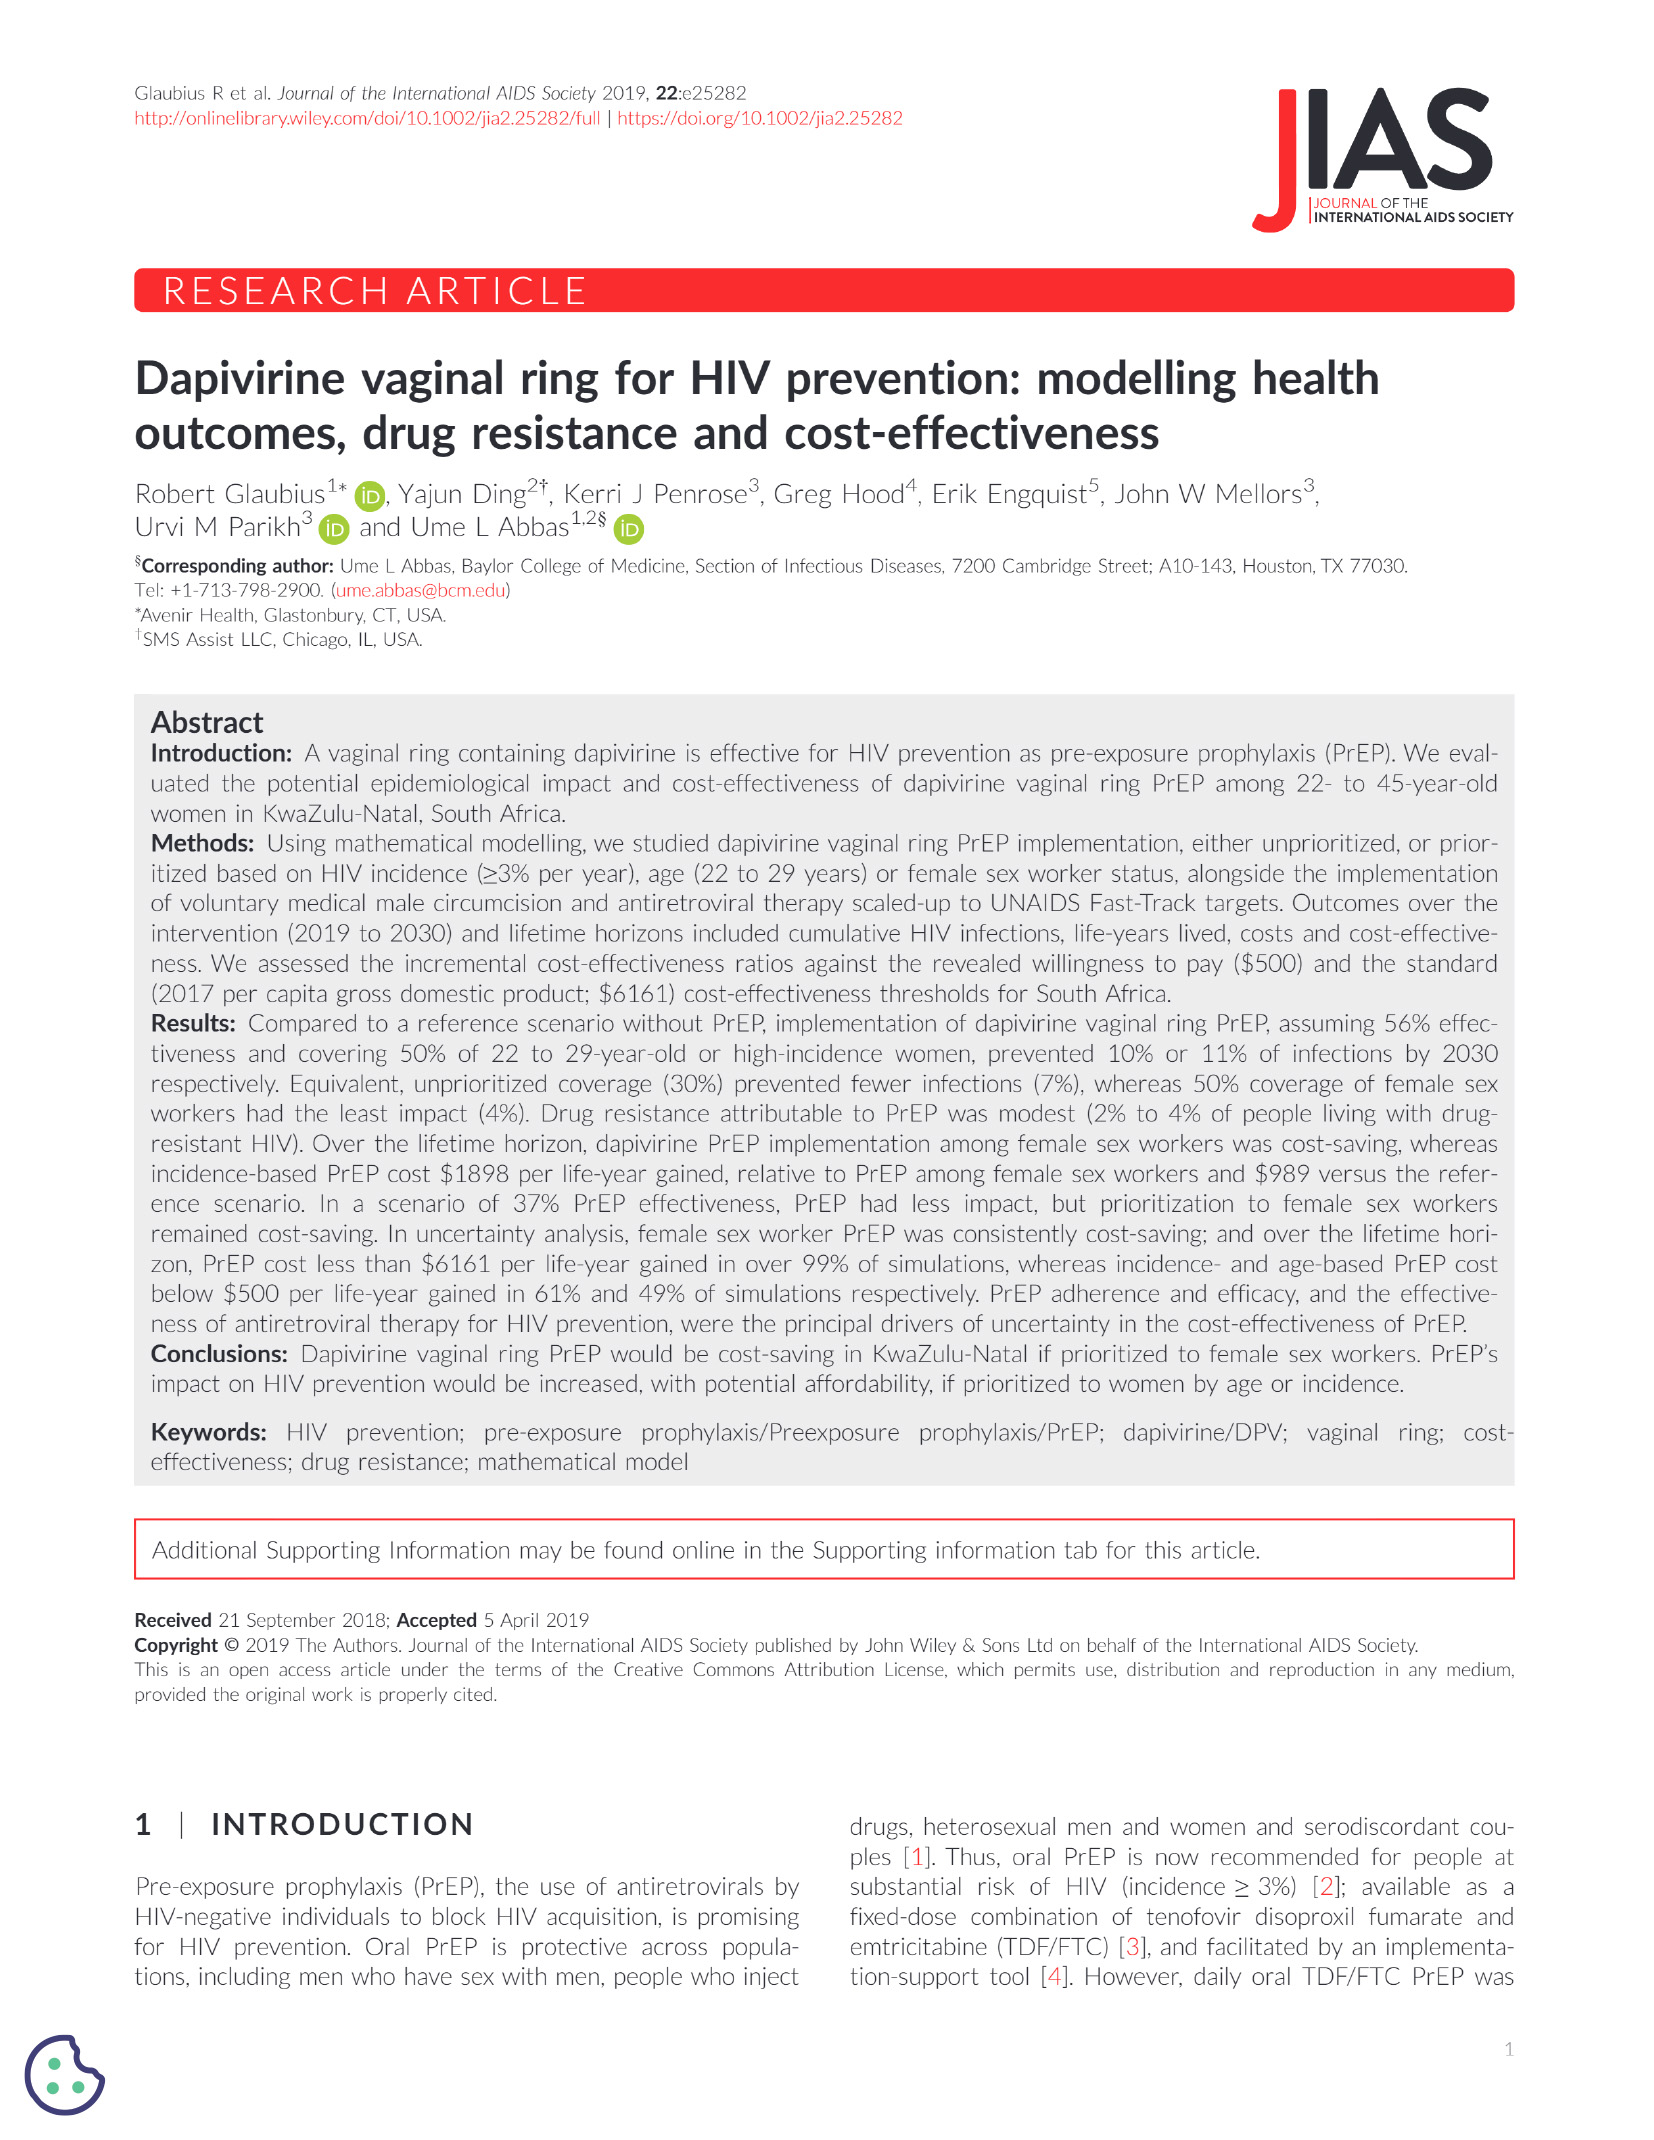 Anillo vaginal de dapivirina para la prevención del VIH: Modelización de los resultados sanitarios, la resistencia a los fármacos y la rentabilidad - portada